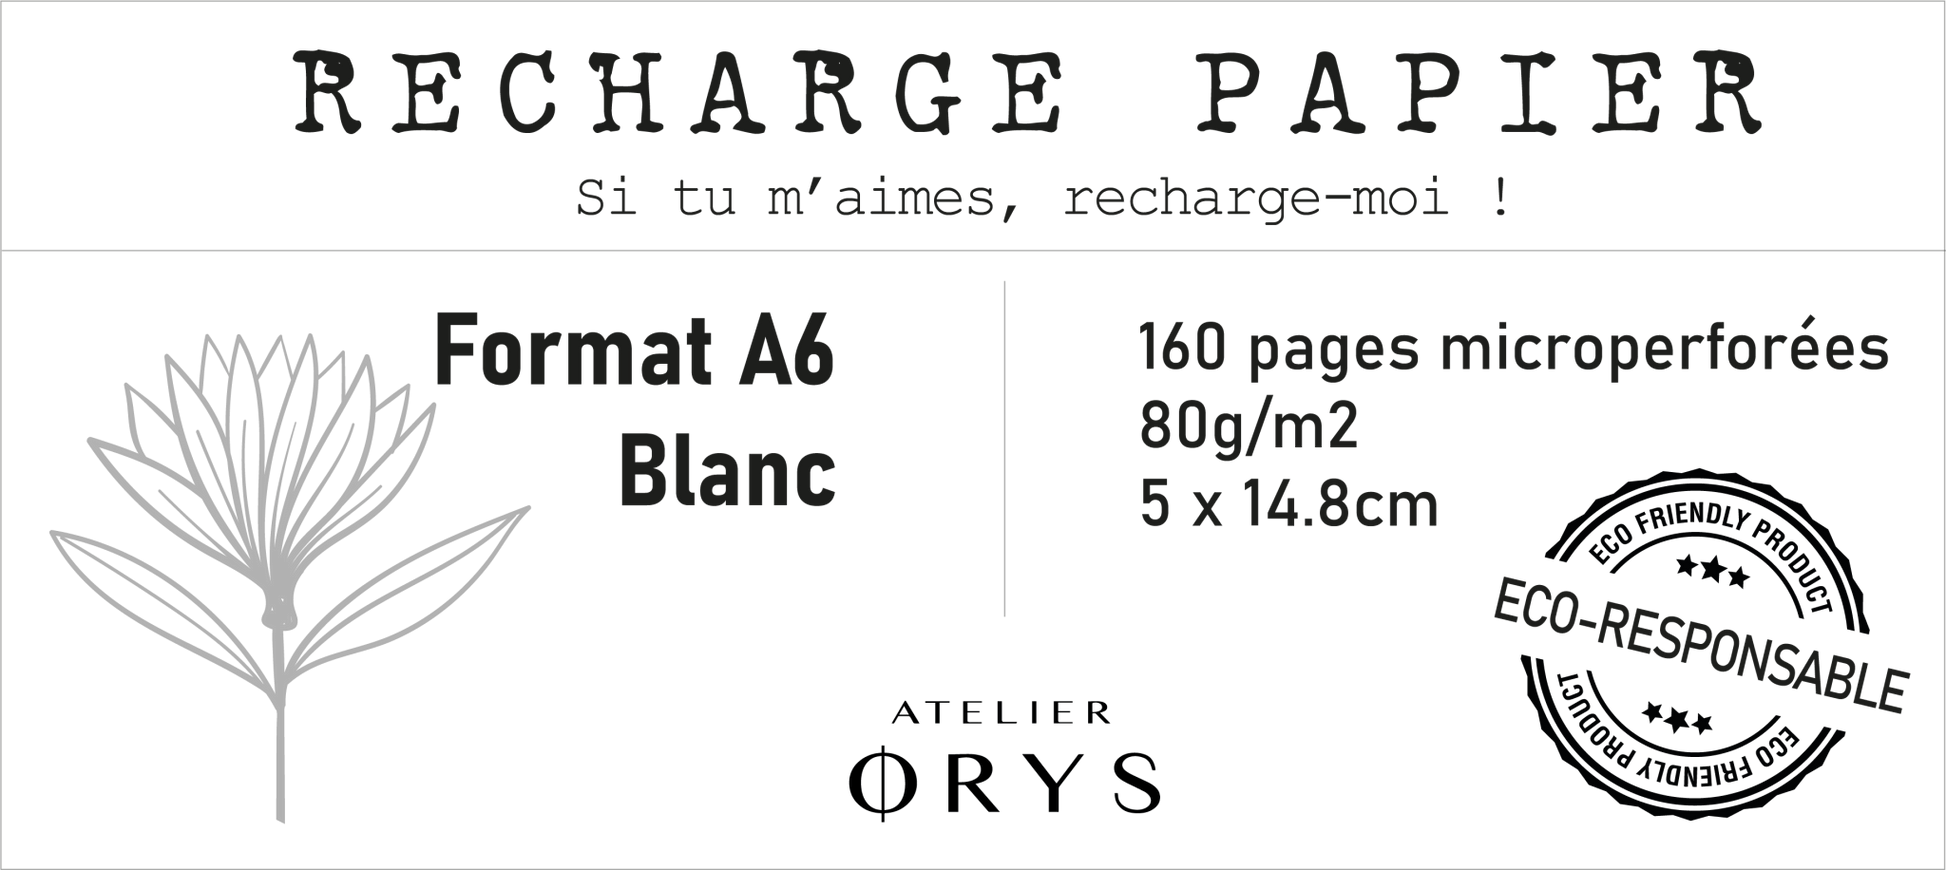 Recharge petit carnet - Blanc - Atelier ORYS